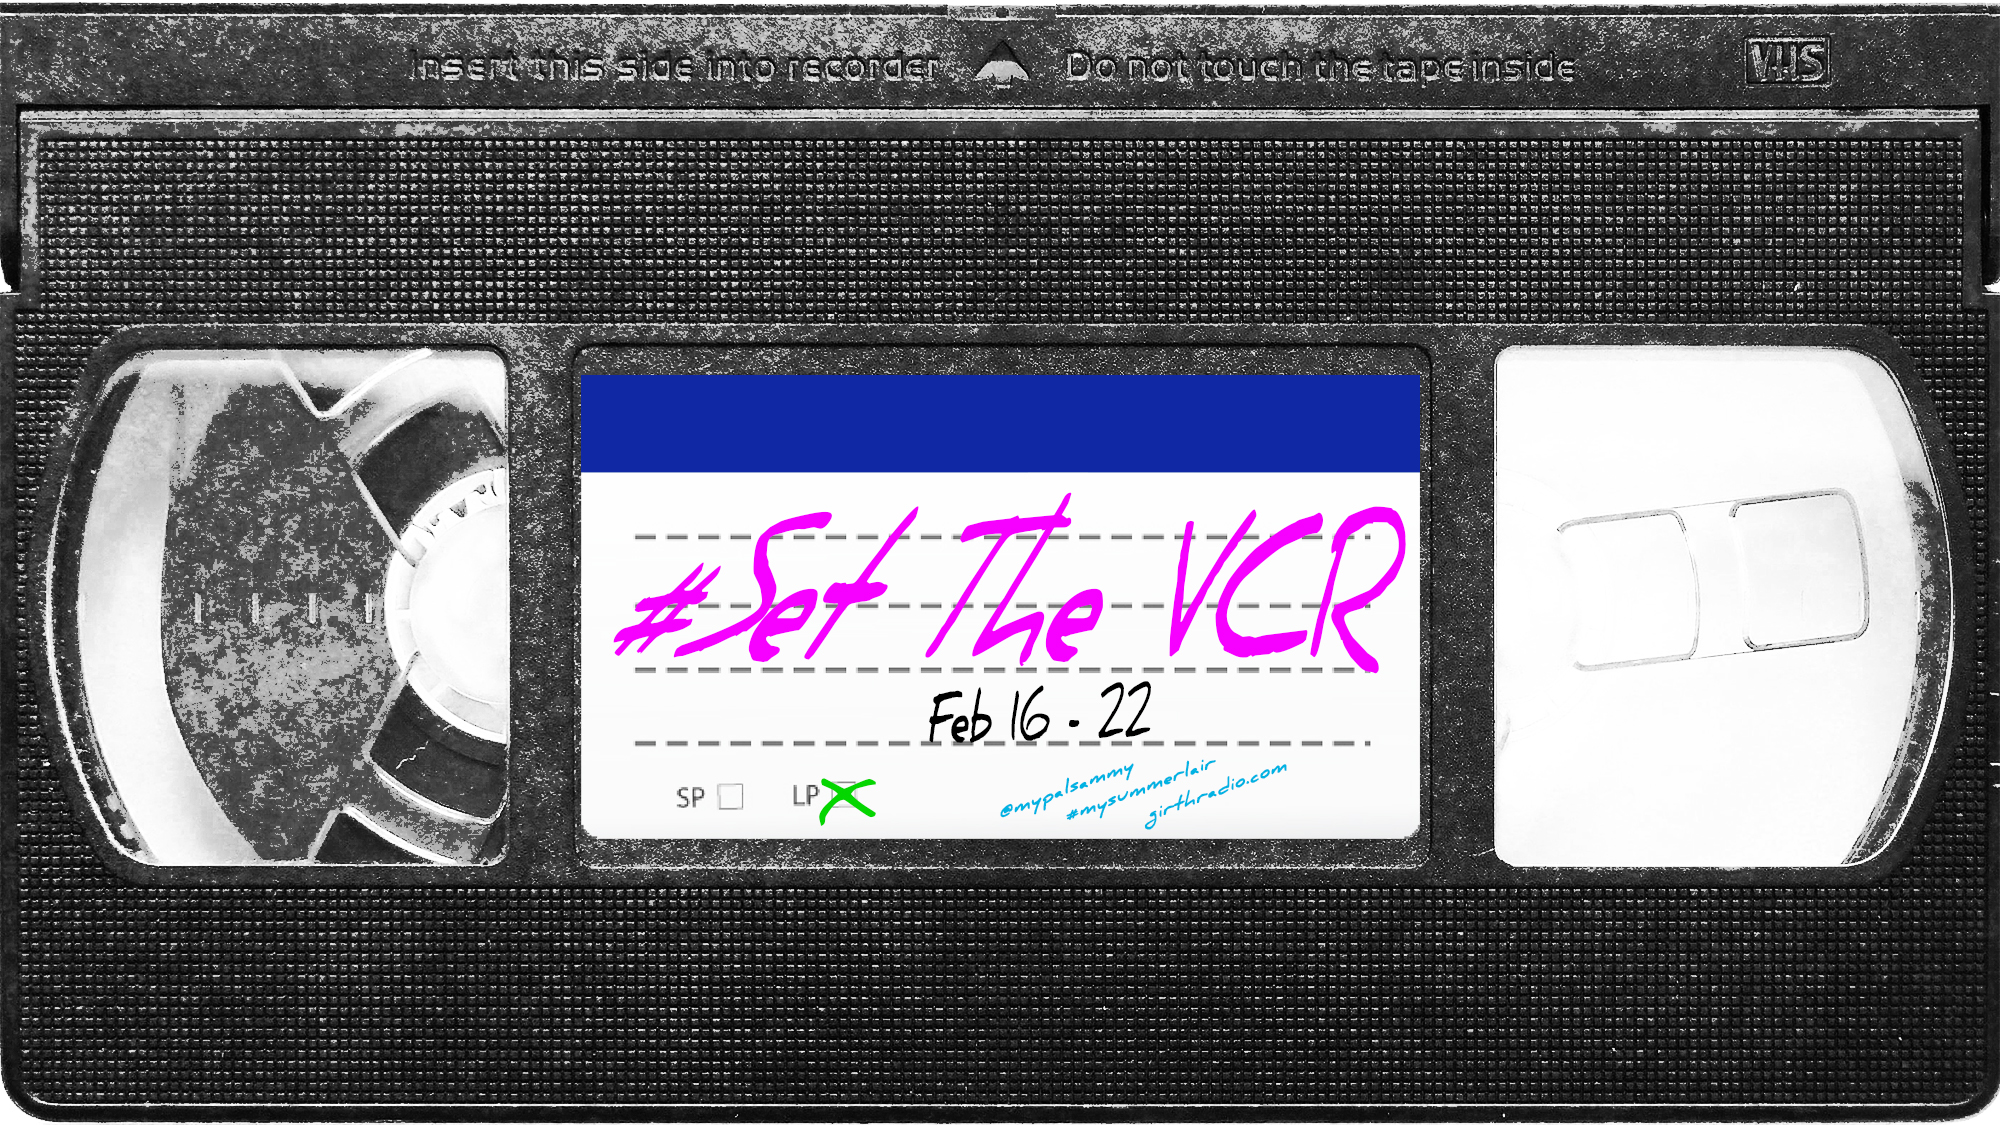 #SetTheVCR: February 16-22, 2020